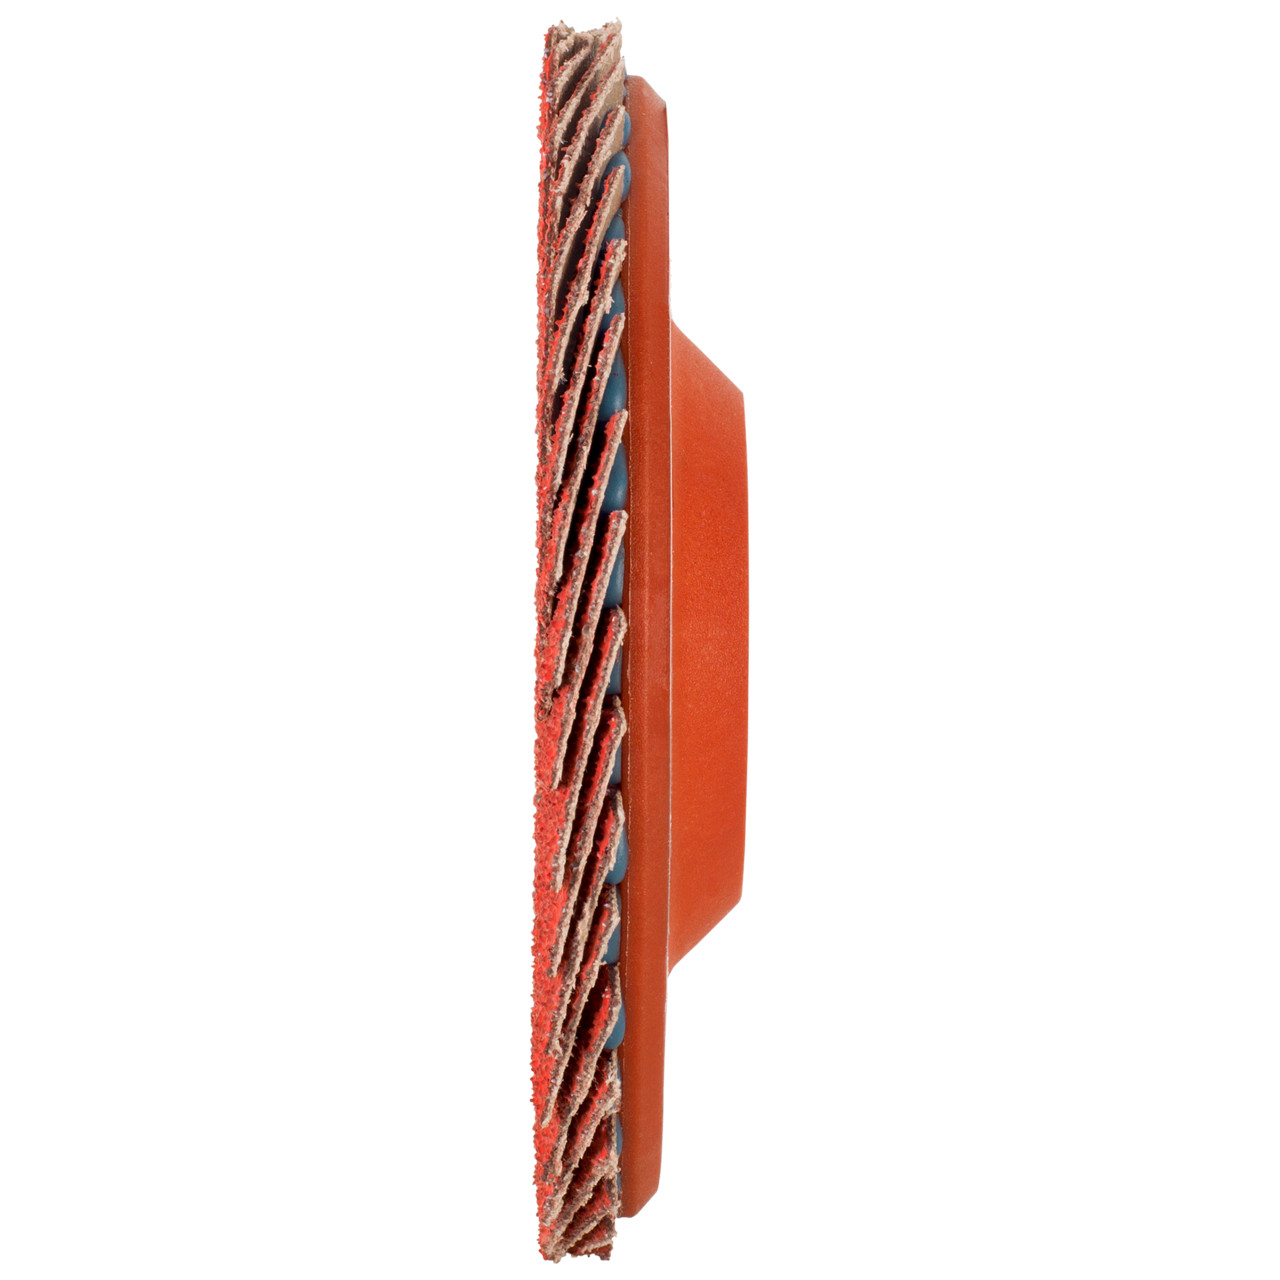 Tyrolit Arandela dentada DxH 125x22,23 CERÁMICA para acero inoxidable, P60, forma: 28N - versión recta (cuerpo portador de plástico), Art. 719847